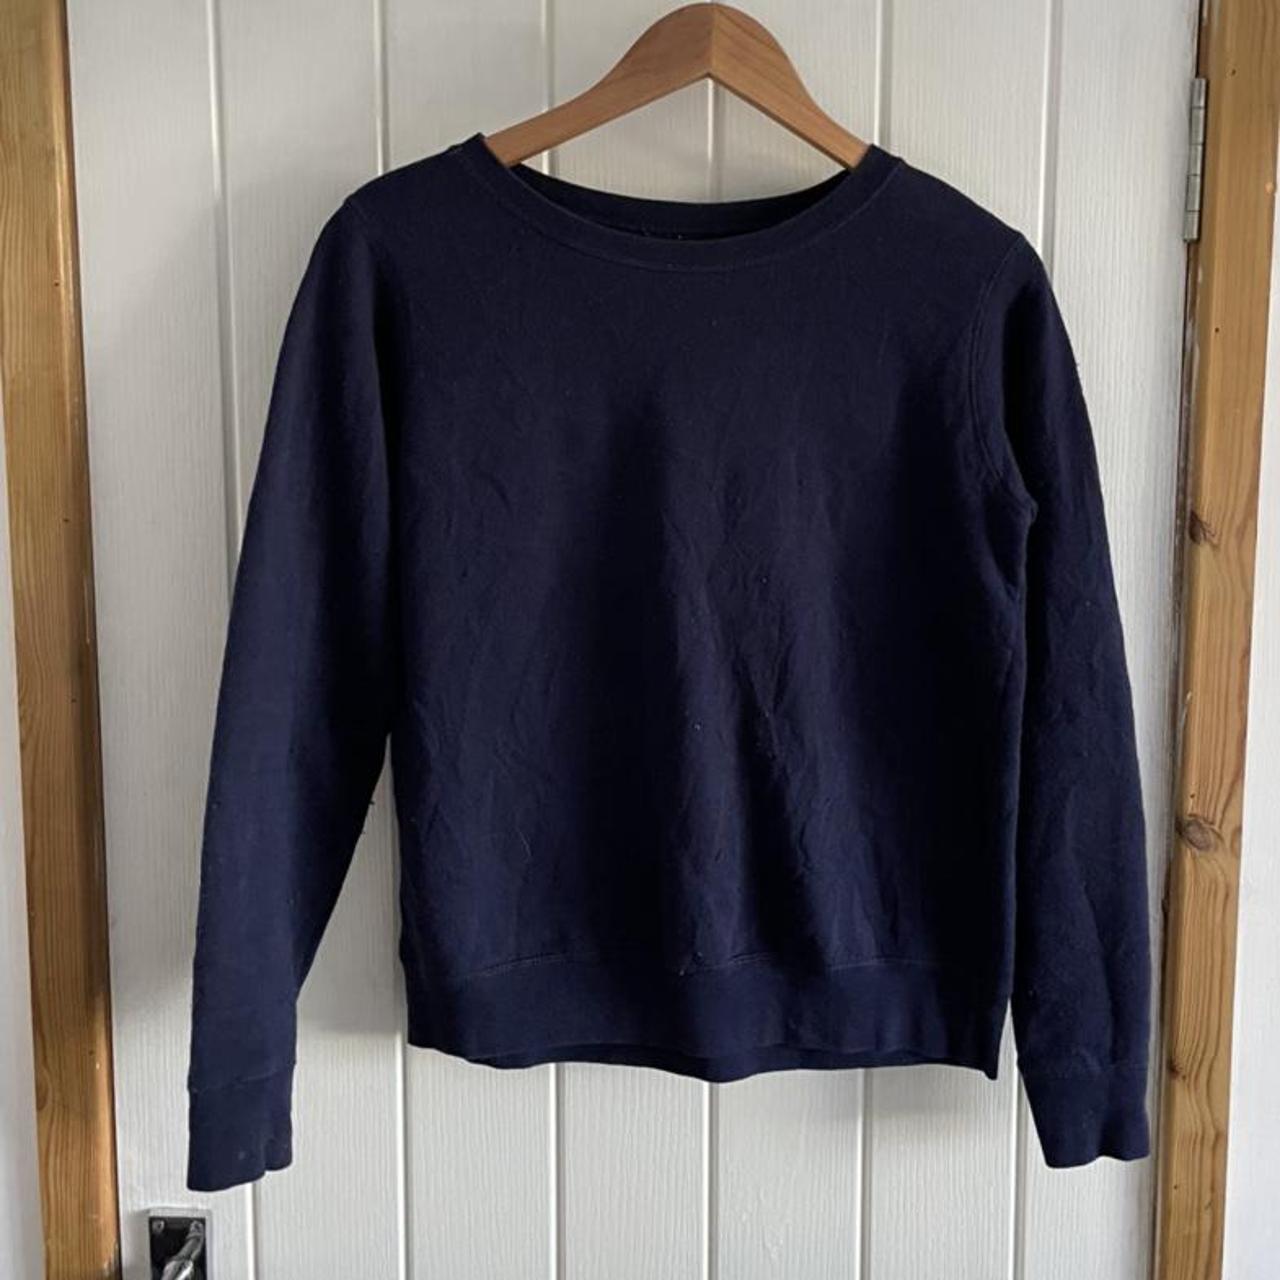 Vintage Hanes navy blue sweatshirt... - Depop